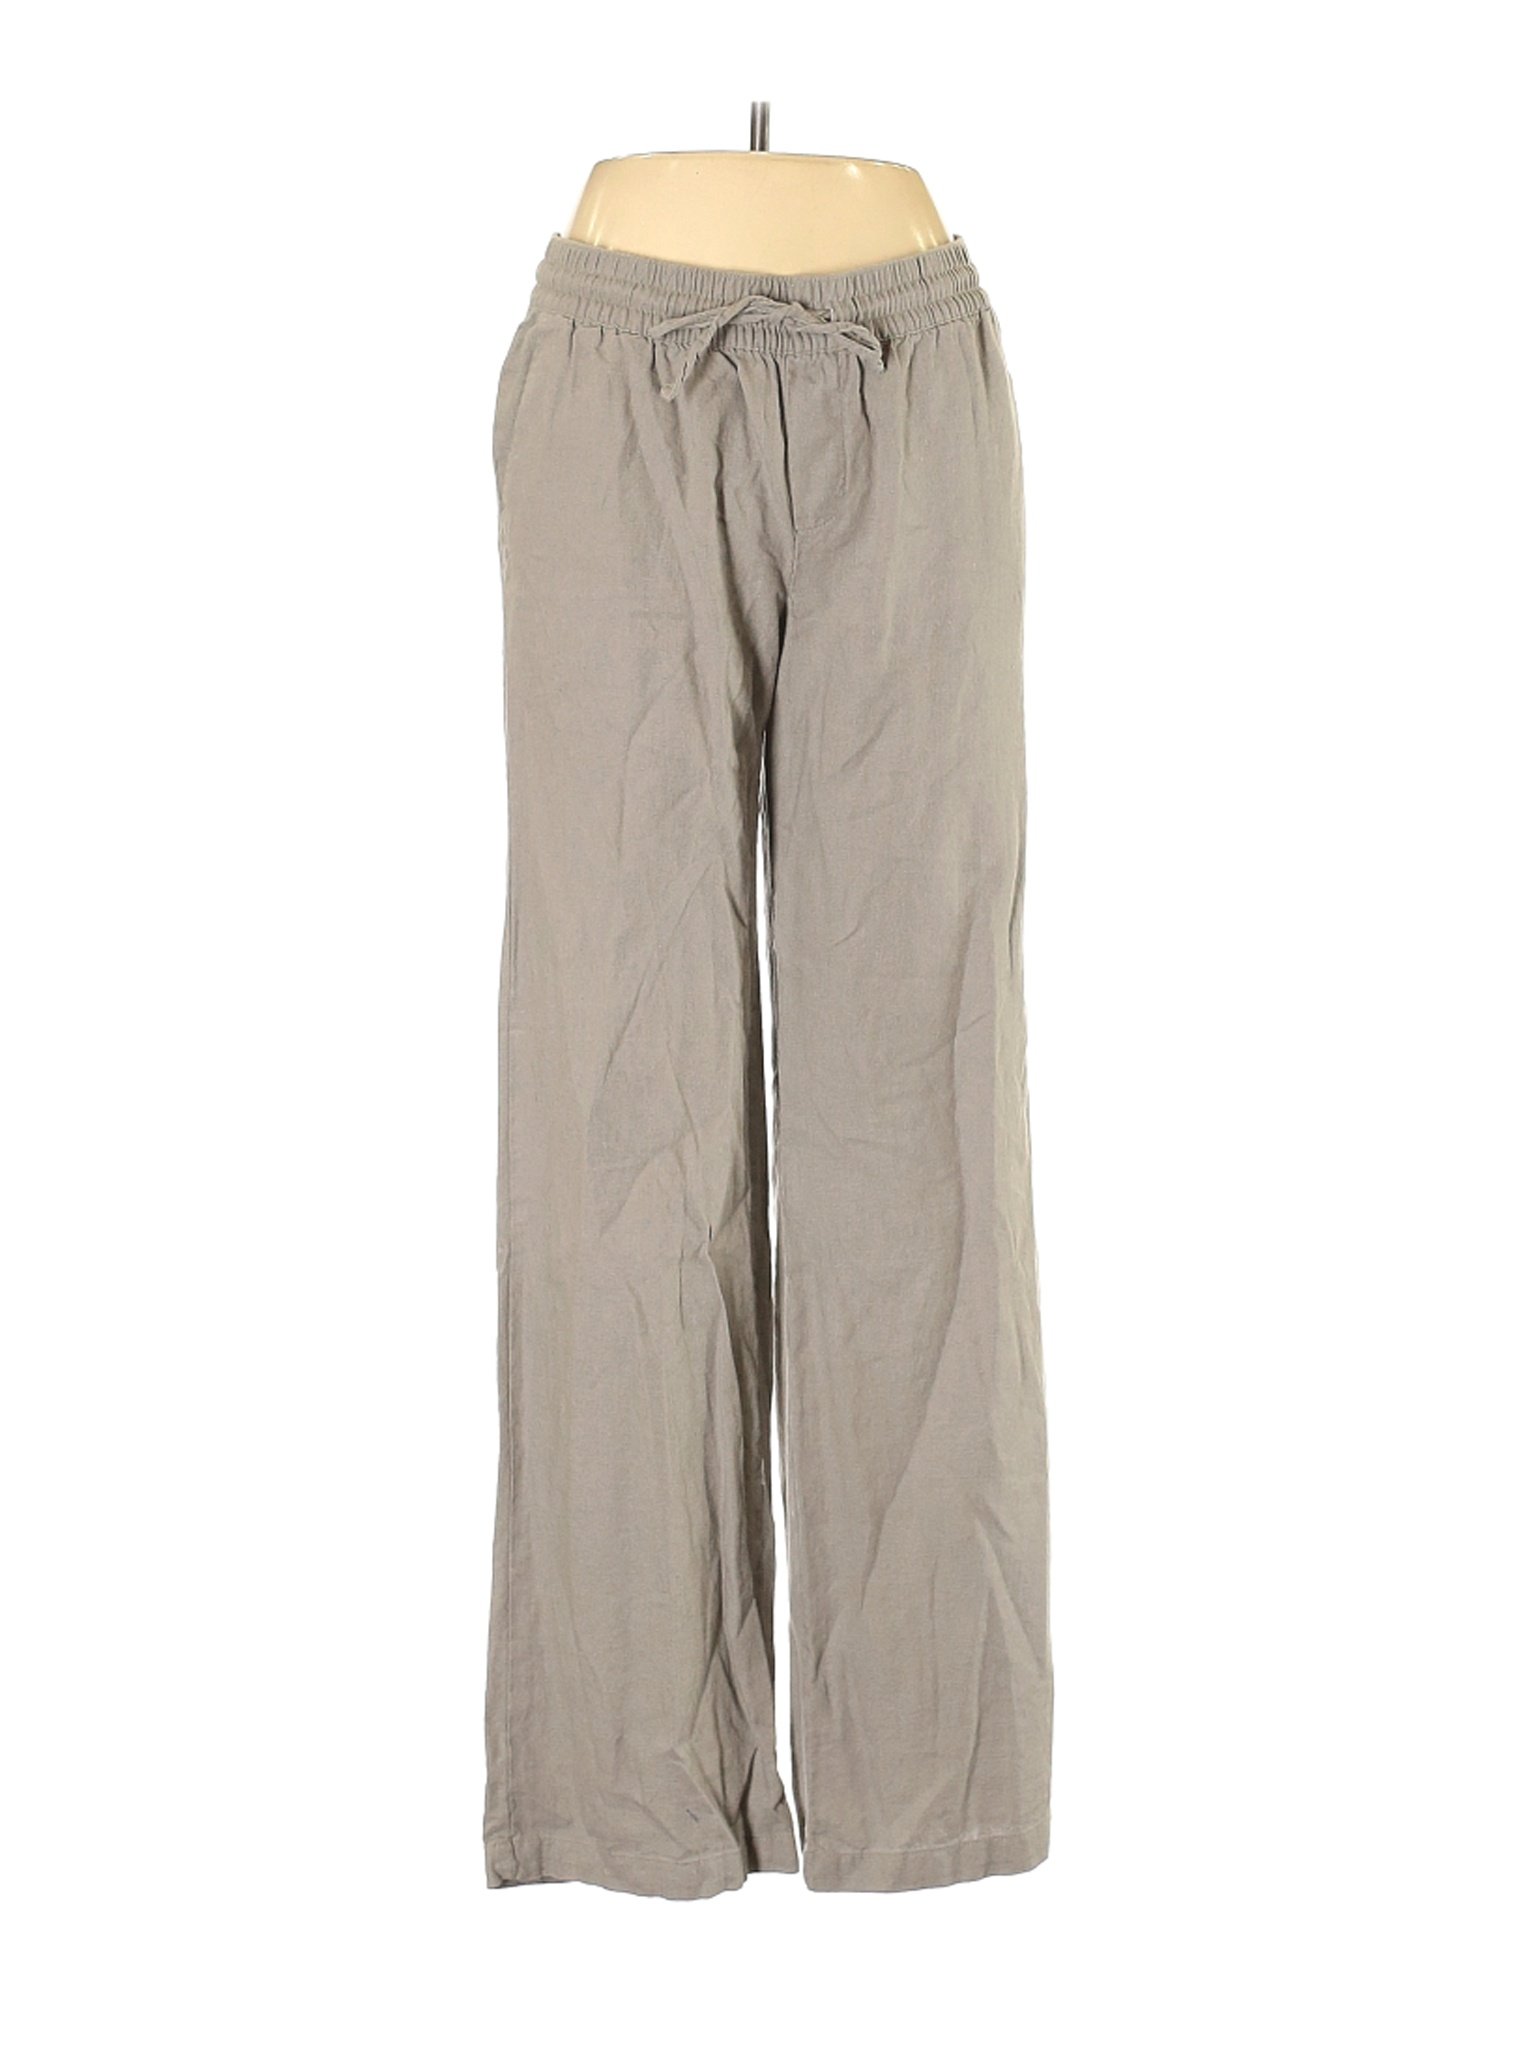 Old Navy Women Brown Linen Pants S | eBay